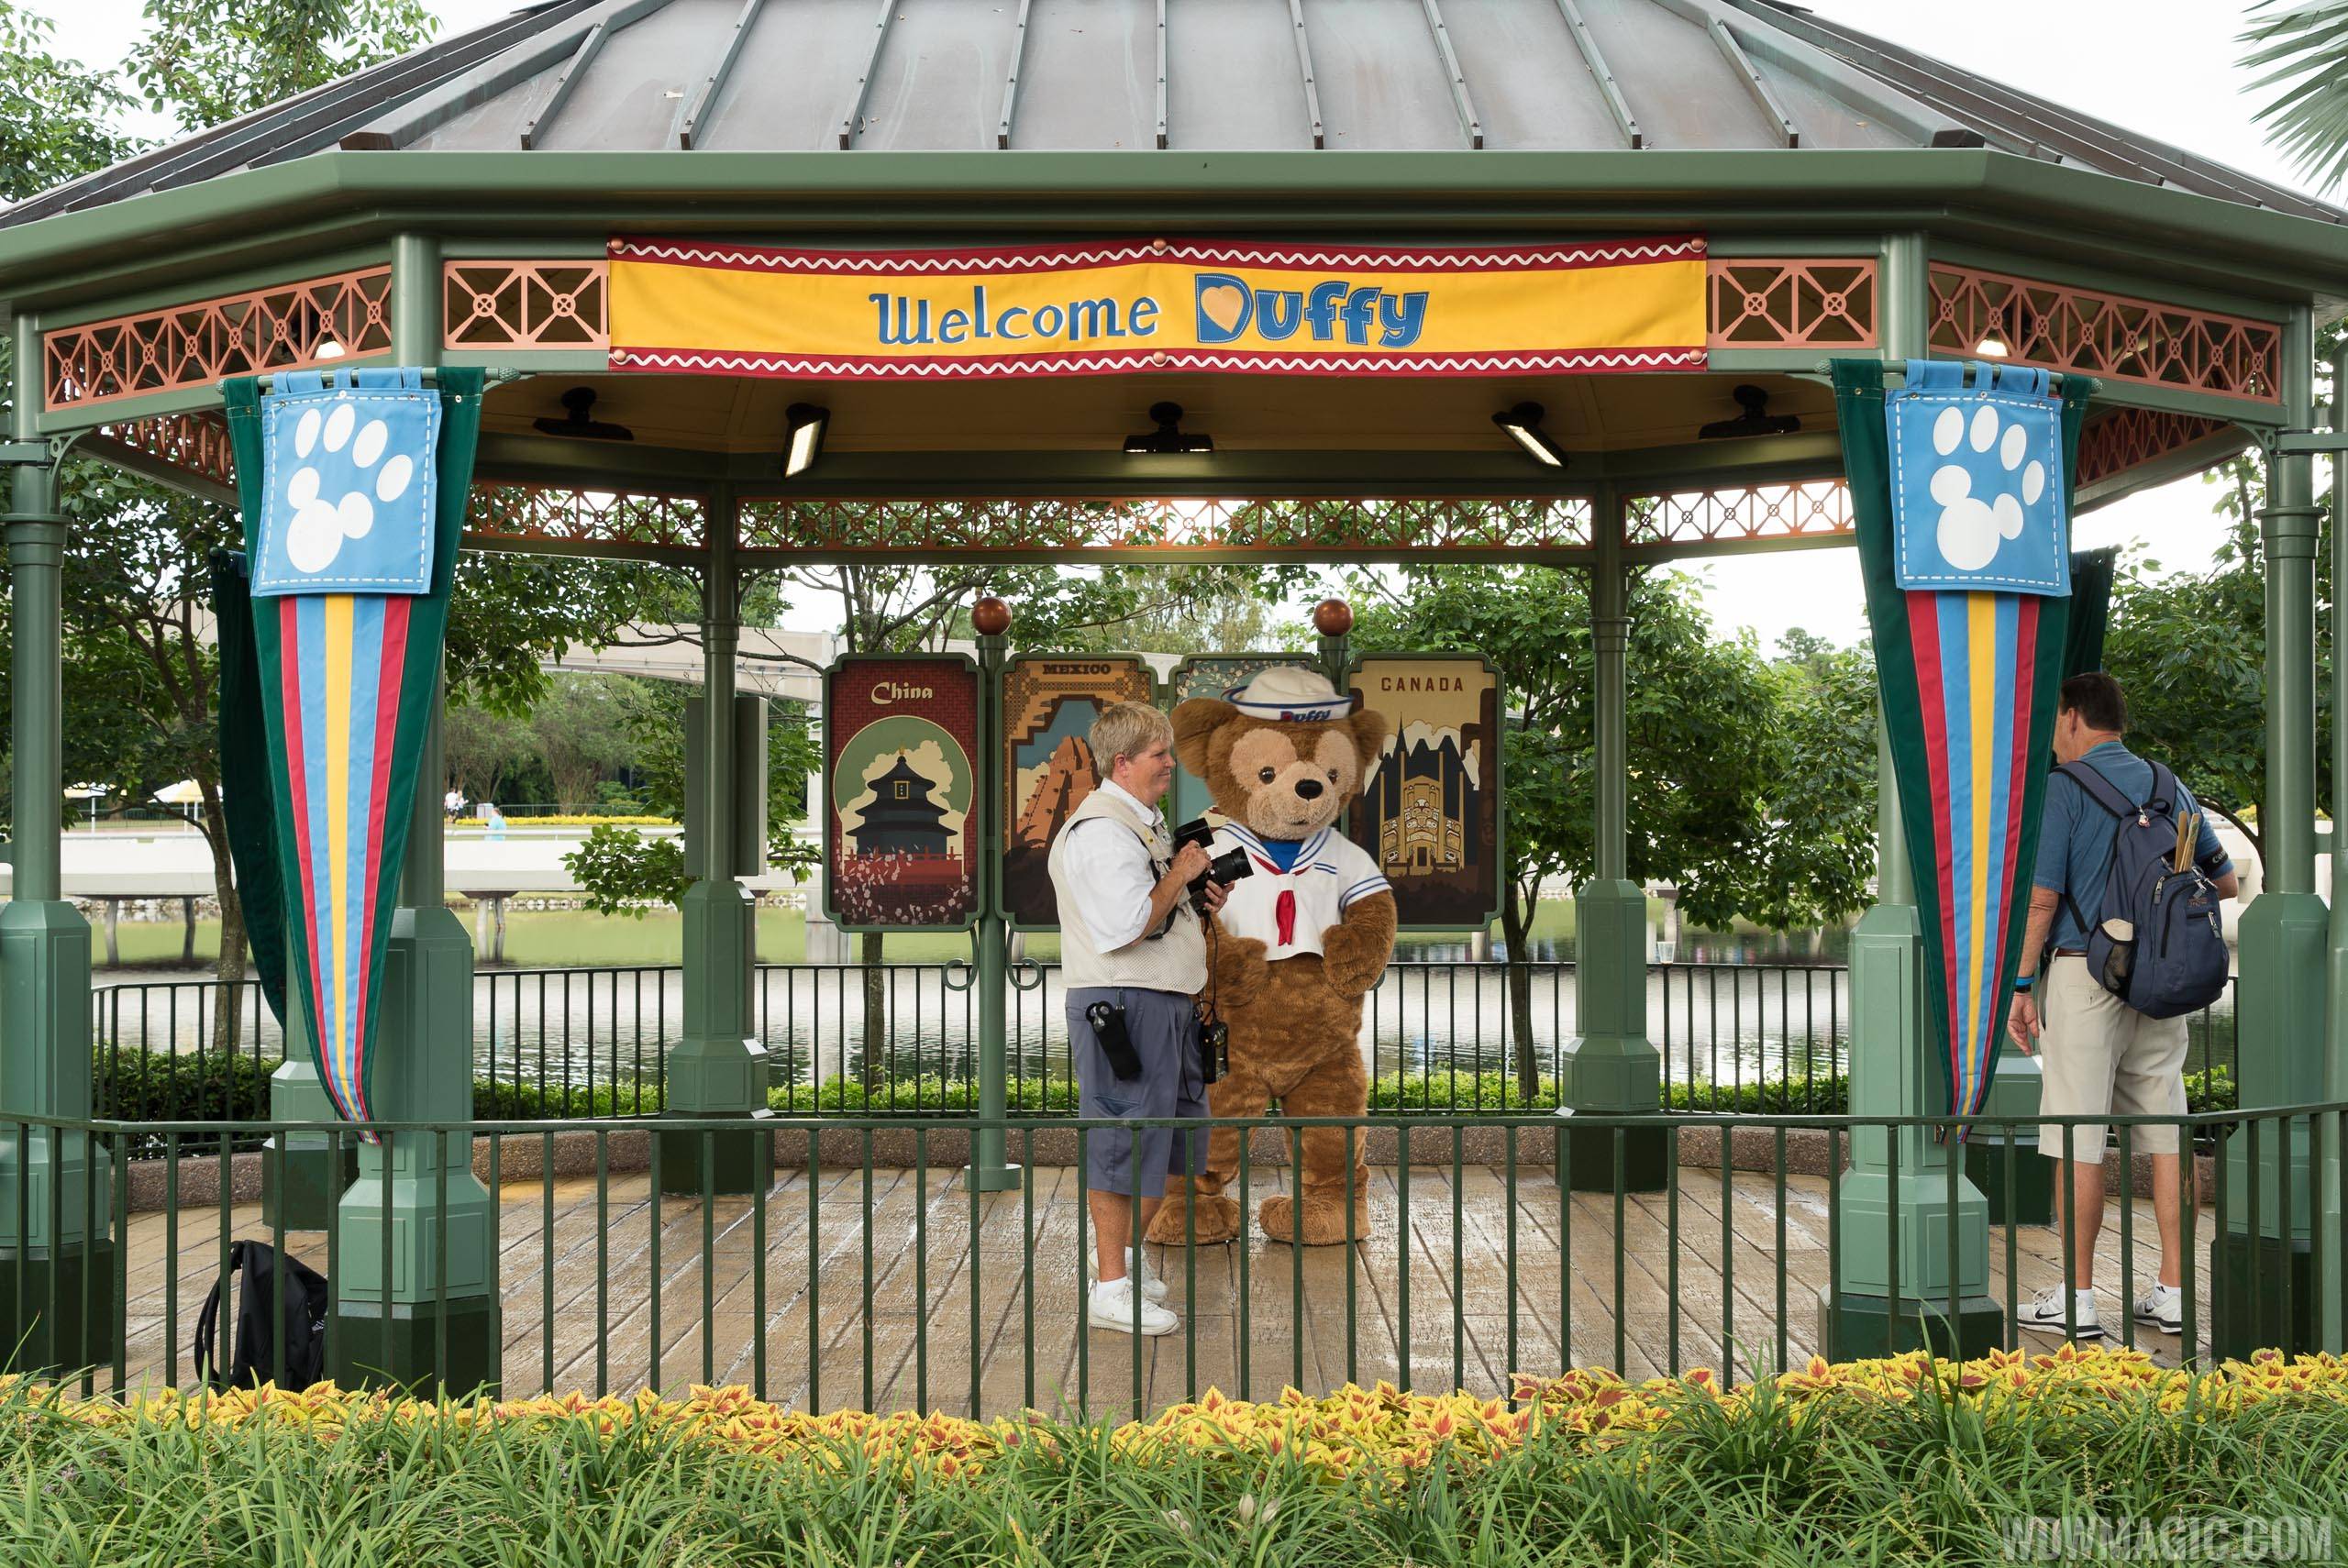 The gazebo was originally built as a home for Duffy the Disney Bear